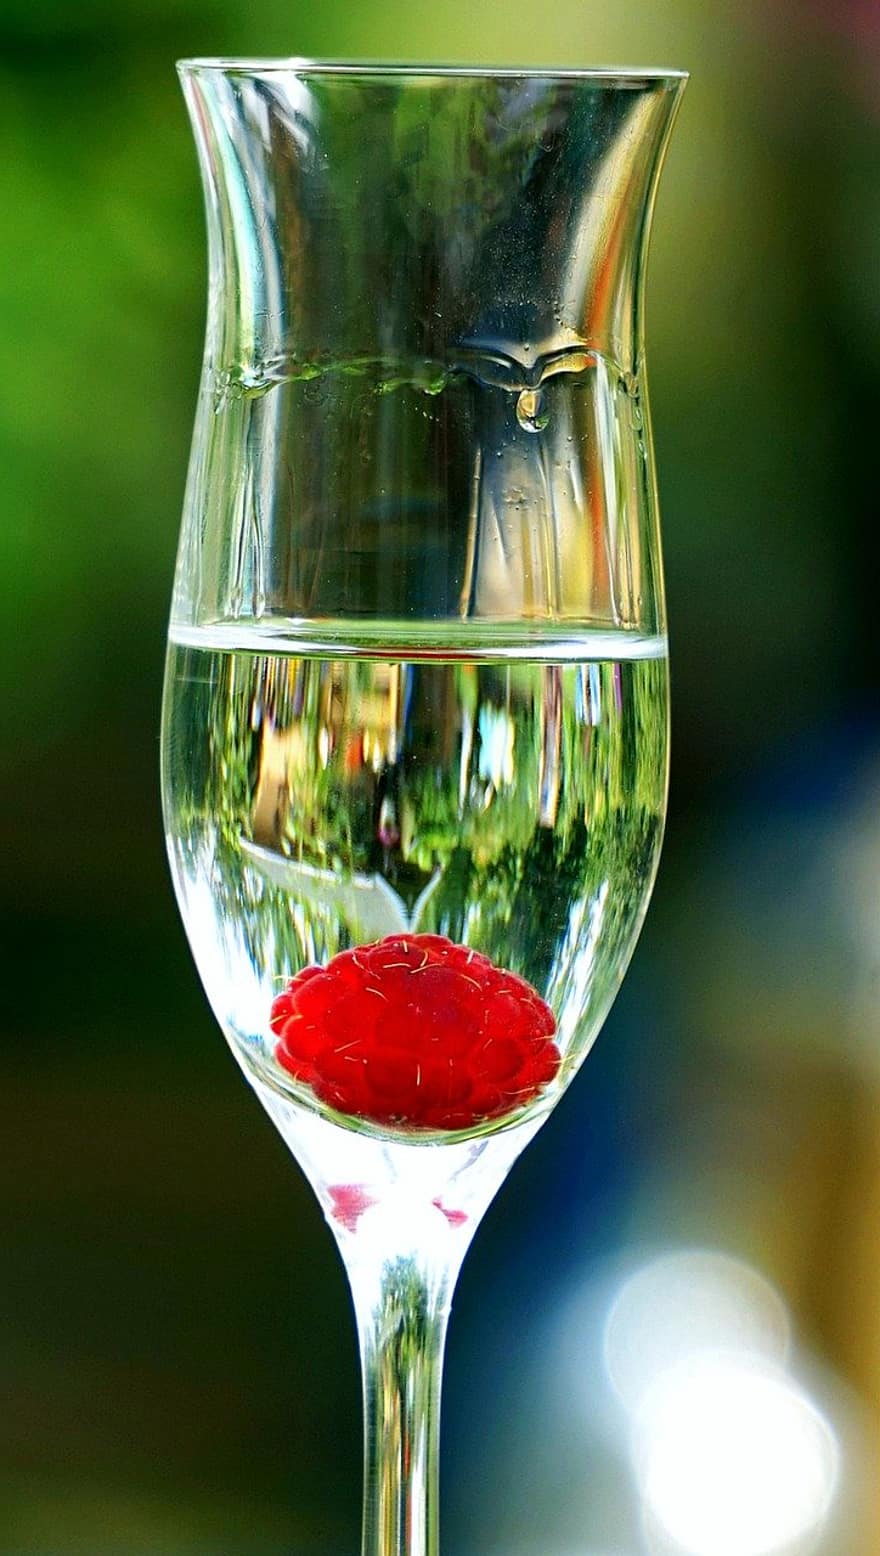 beber, vaso, aguardiente, frambuesa, espíritu, alcohol, de cerca, vino, líquido, Copa de vino, solo objeto